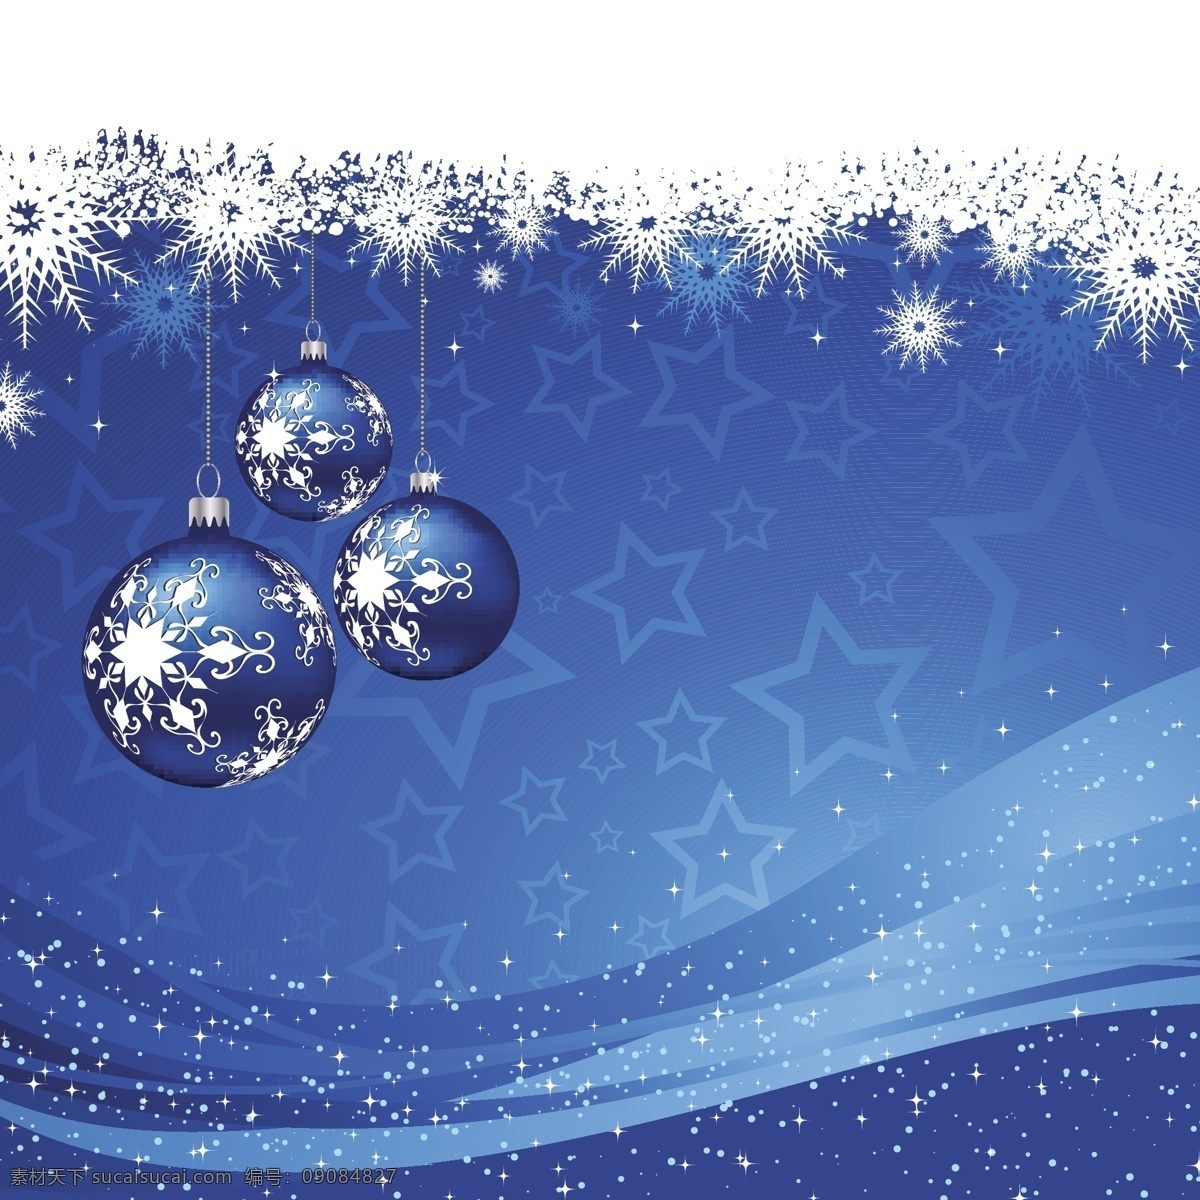 蓝色 背景 小 玩意 雪花 圣诞节 圣诞快乐 冬天 星星 装修 装饰 文化 冷 假期 圣诞球 季节 节日 十二月 给传统